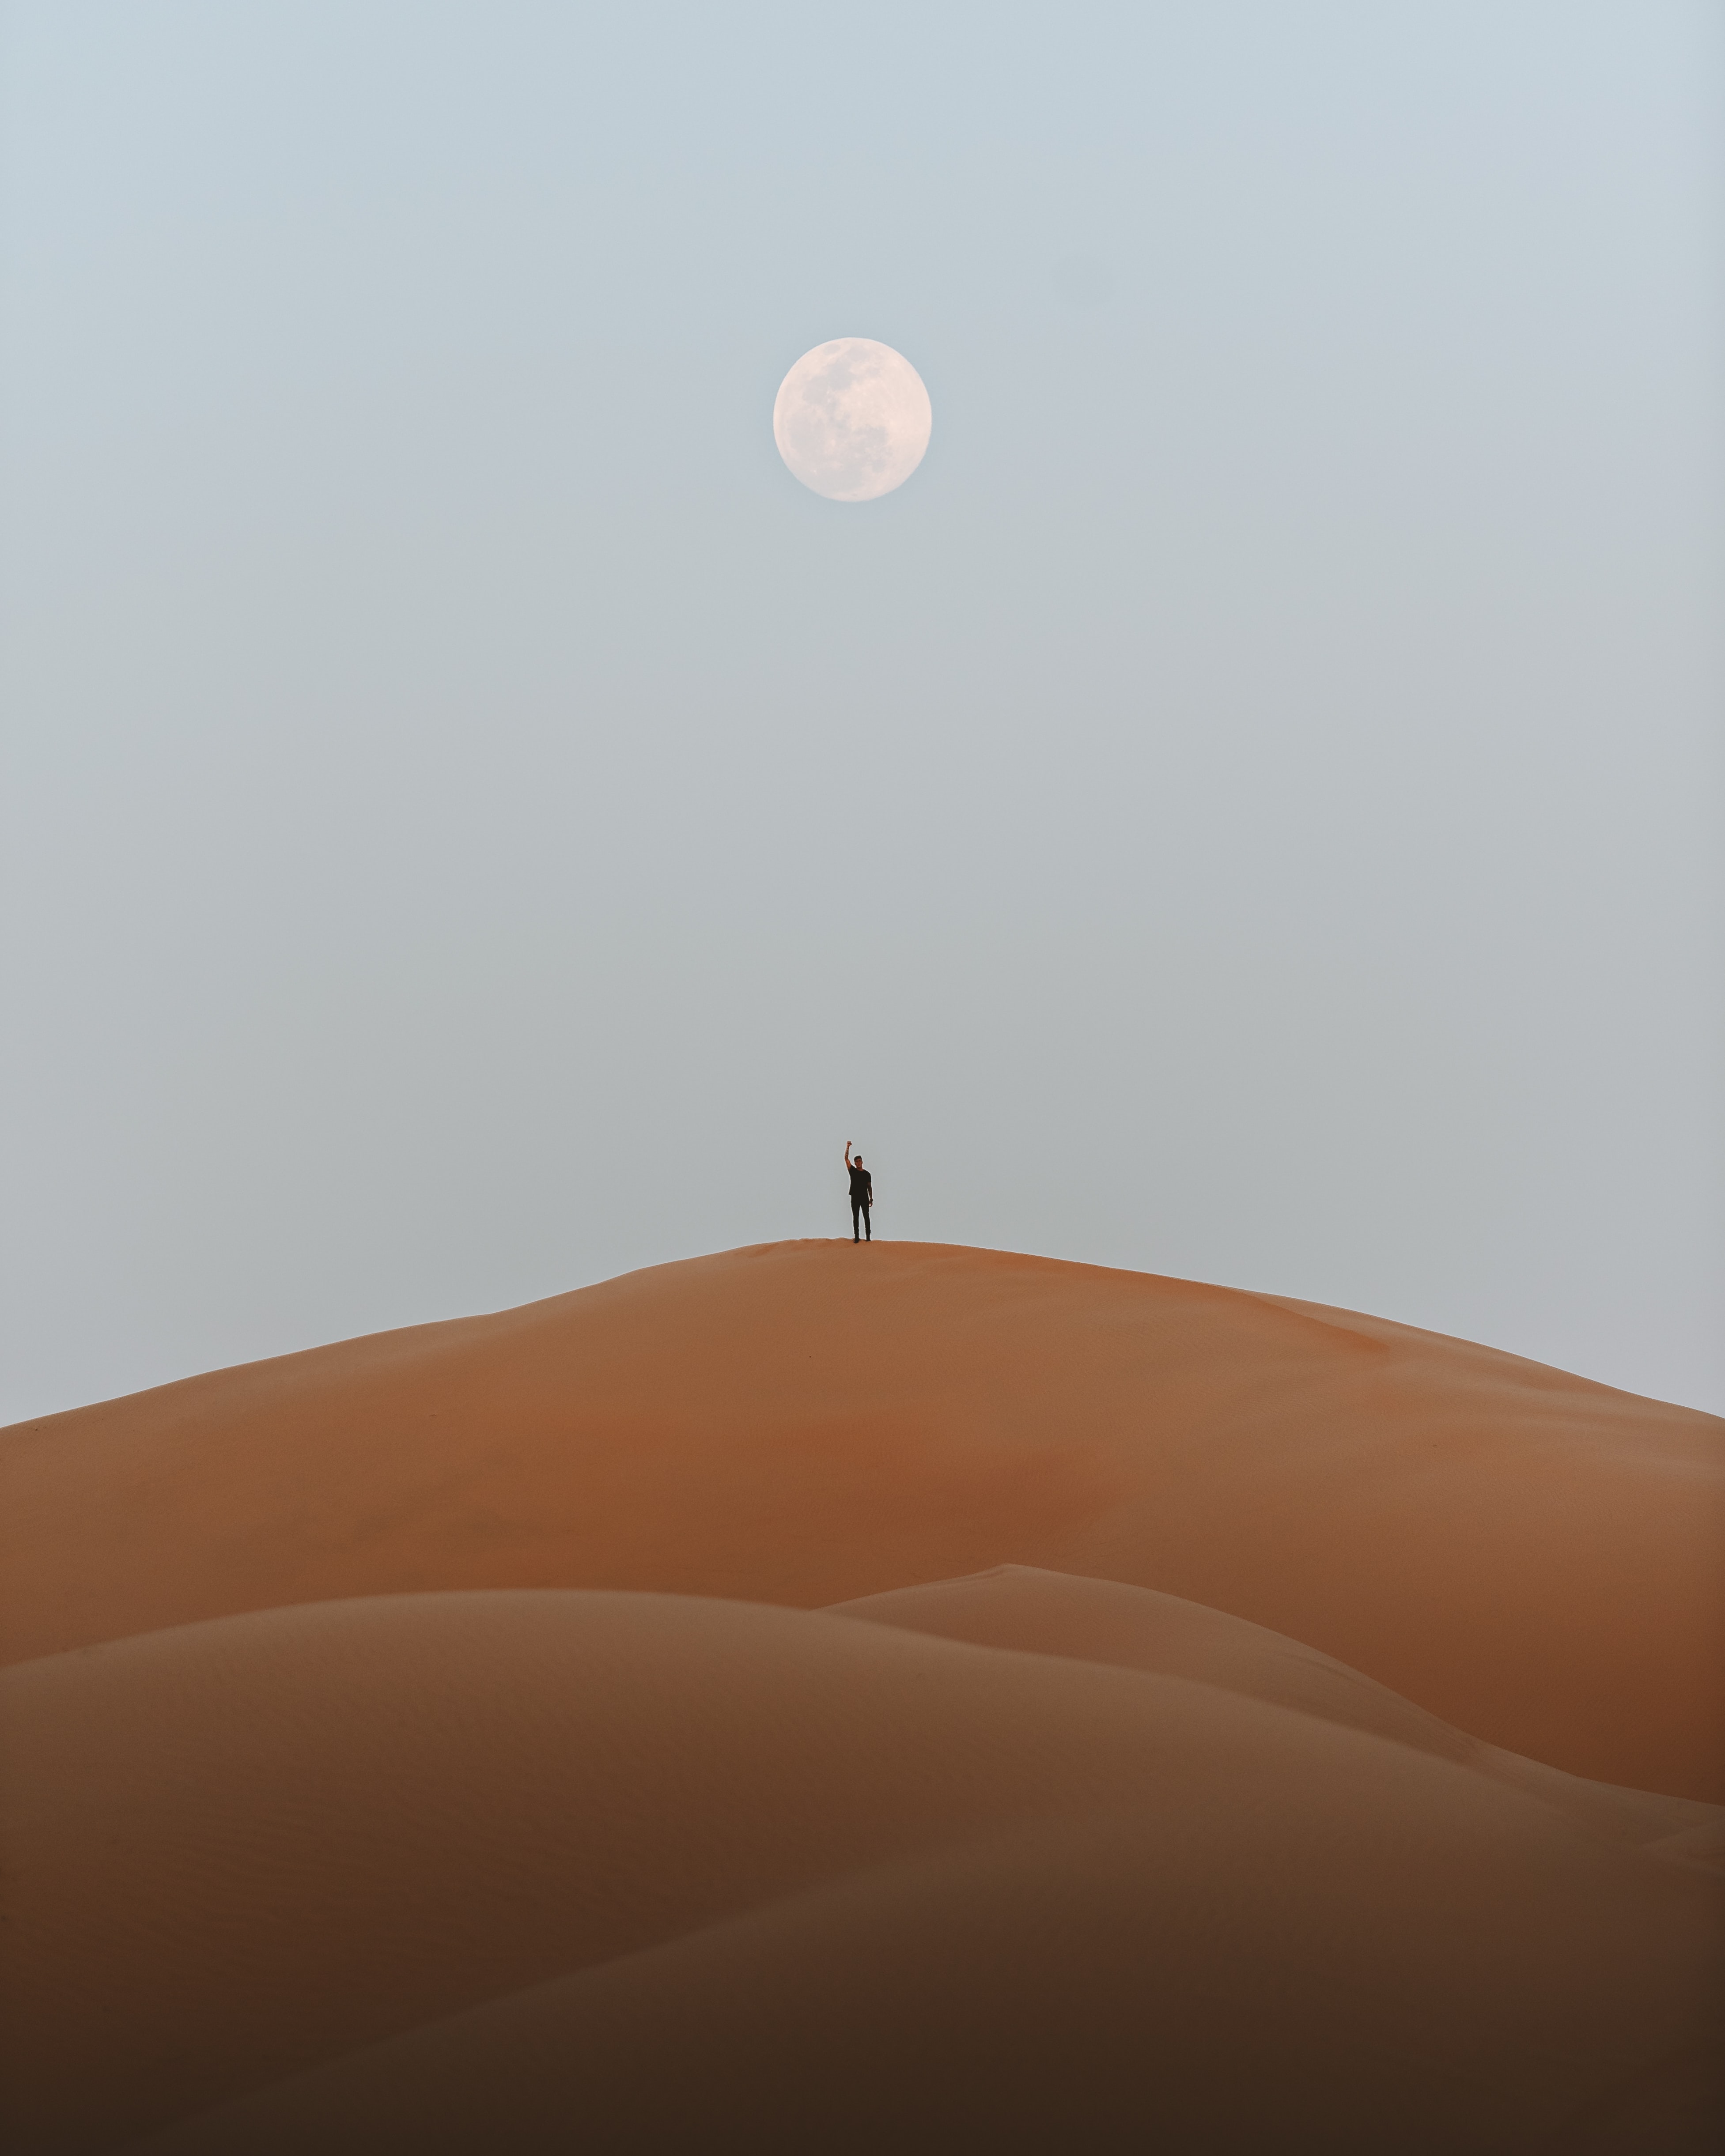 Скачать обои бесплатно Природа, Силуэт, Пустыня, Песок, Луна картинка на рабочий стол ПК